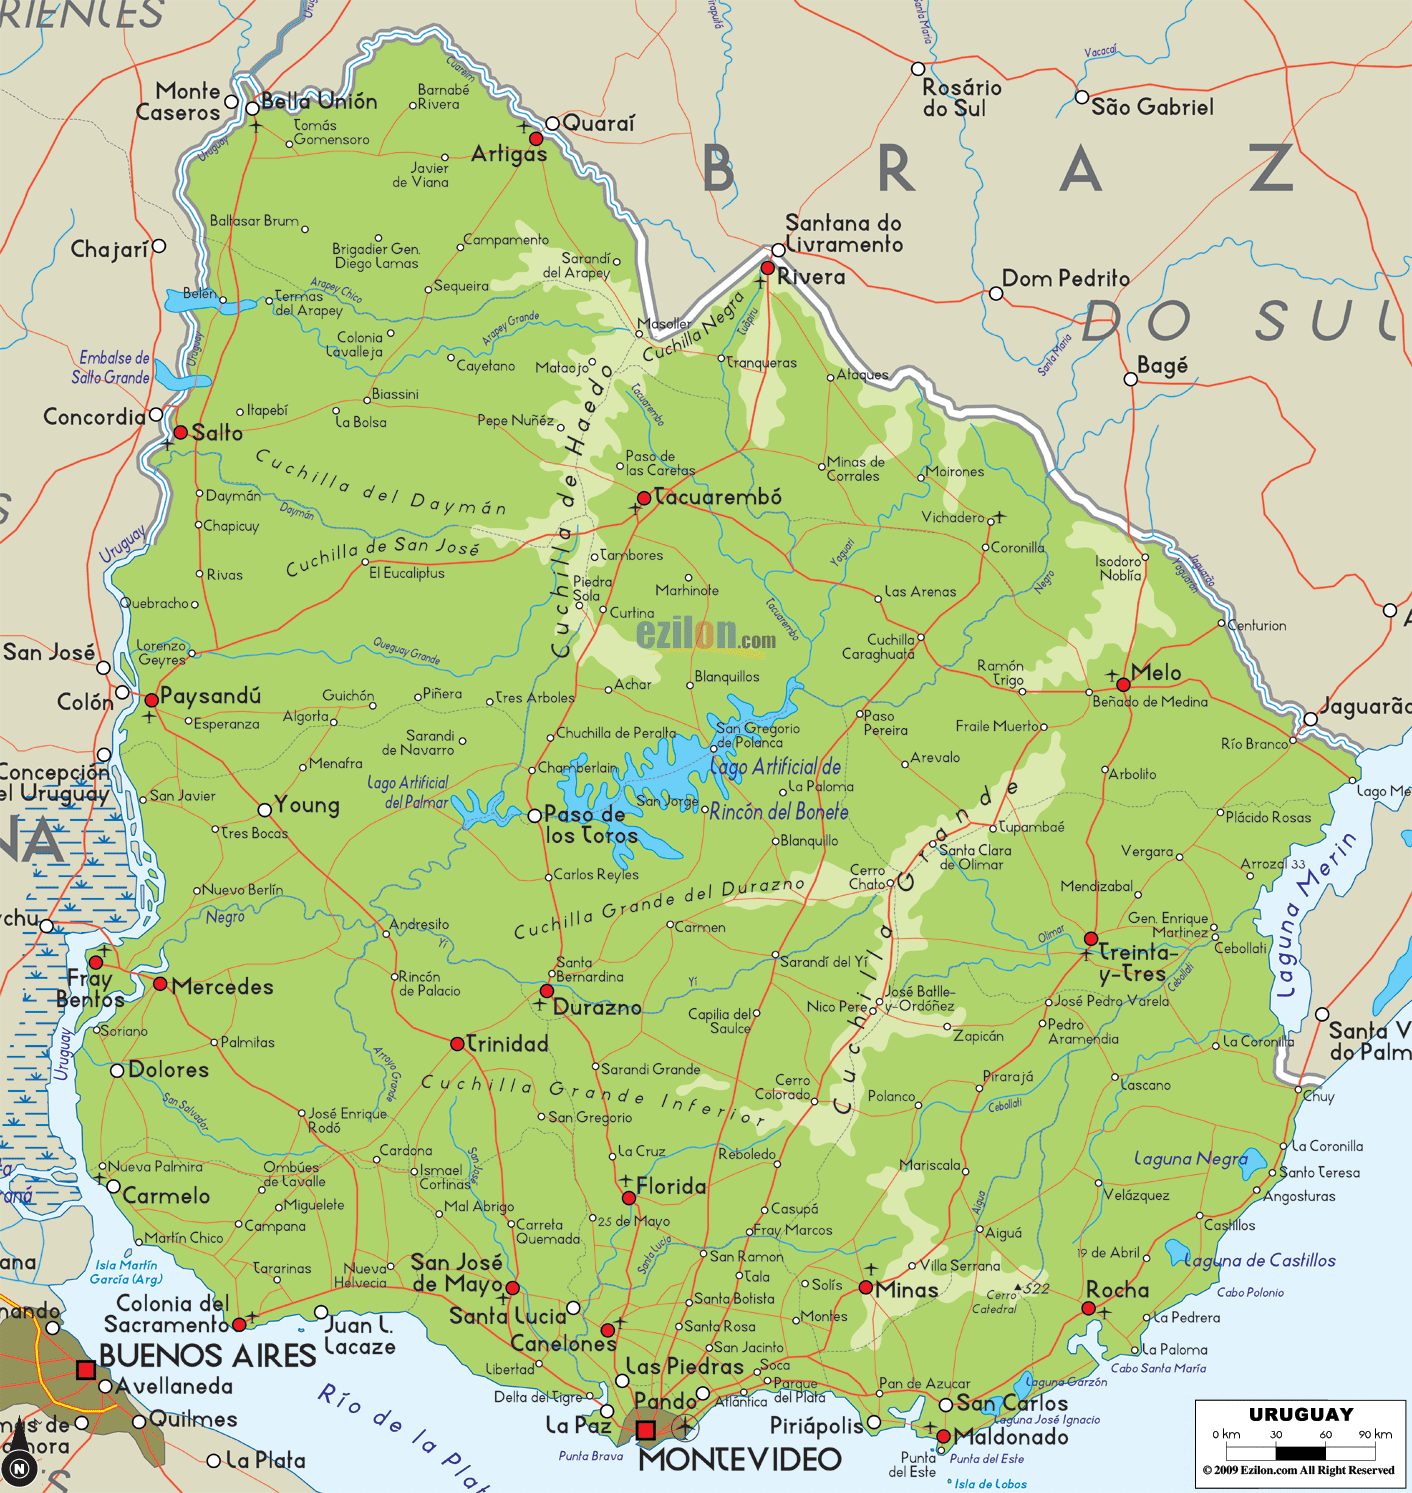 Map of Uruguay_2.jpg